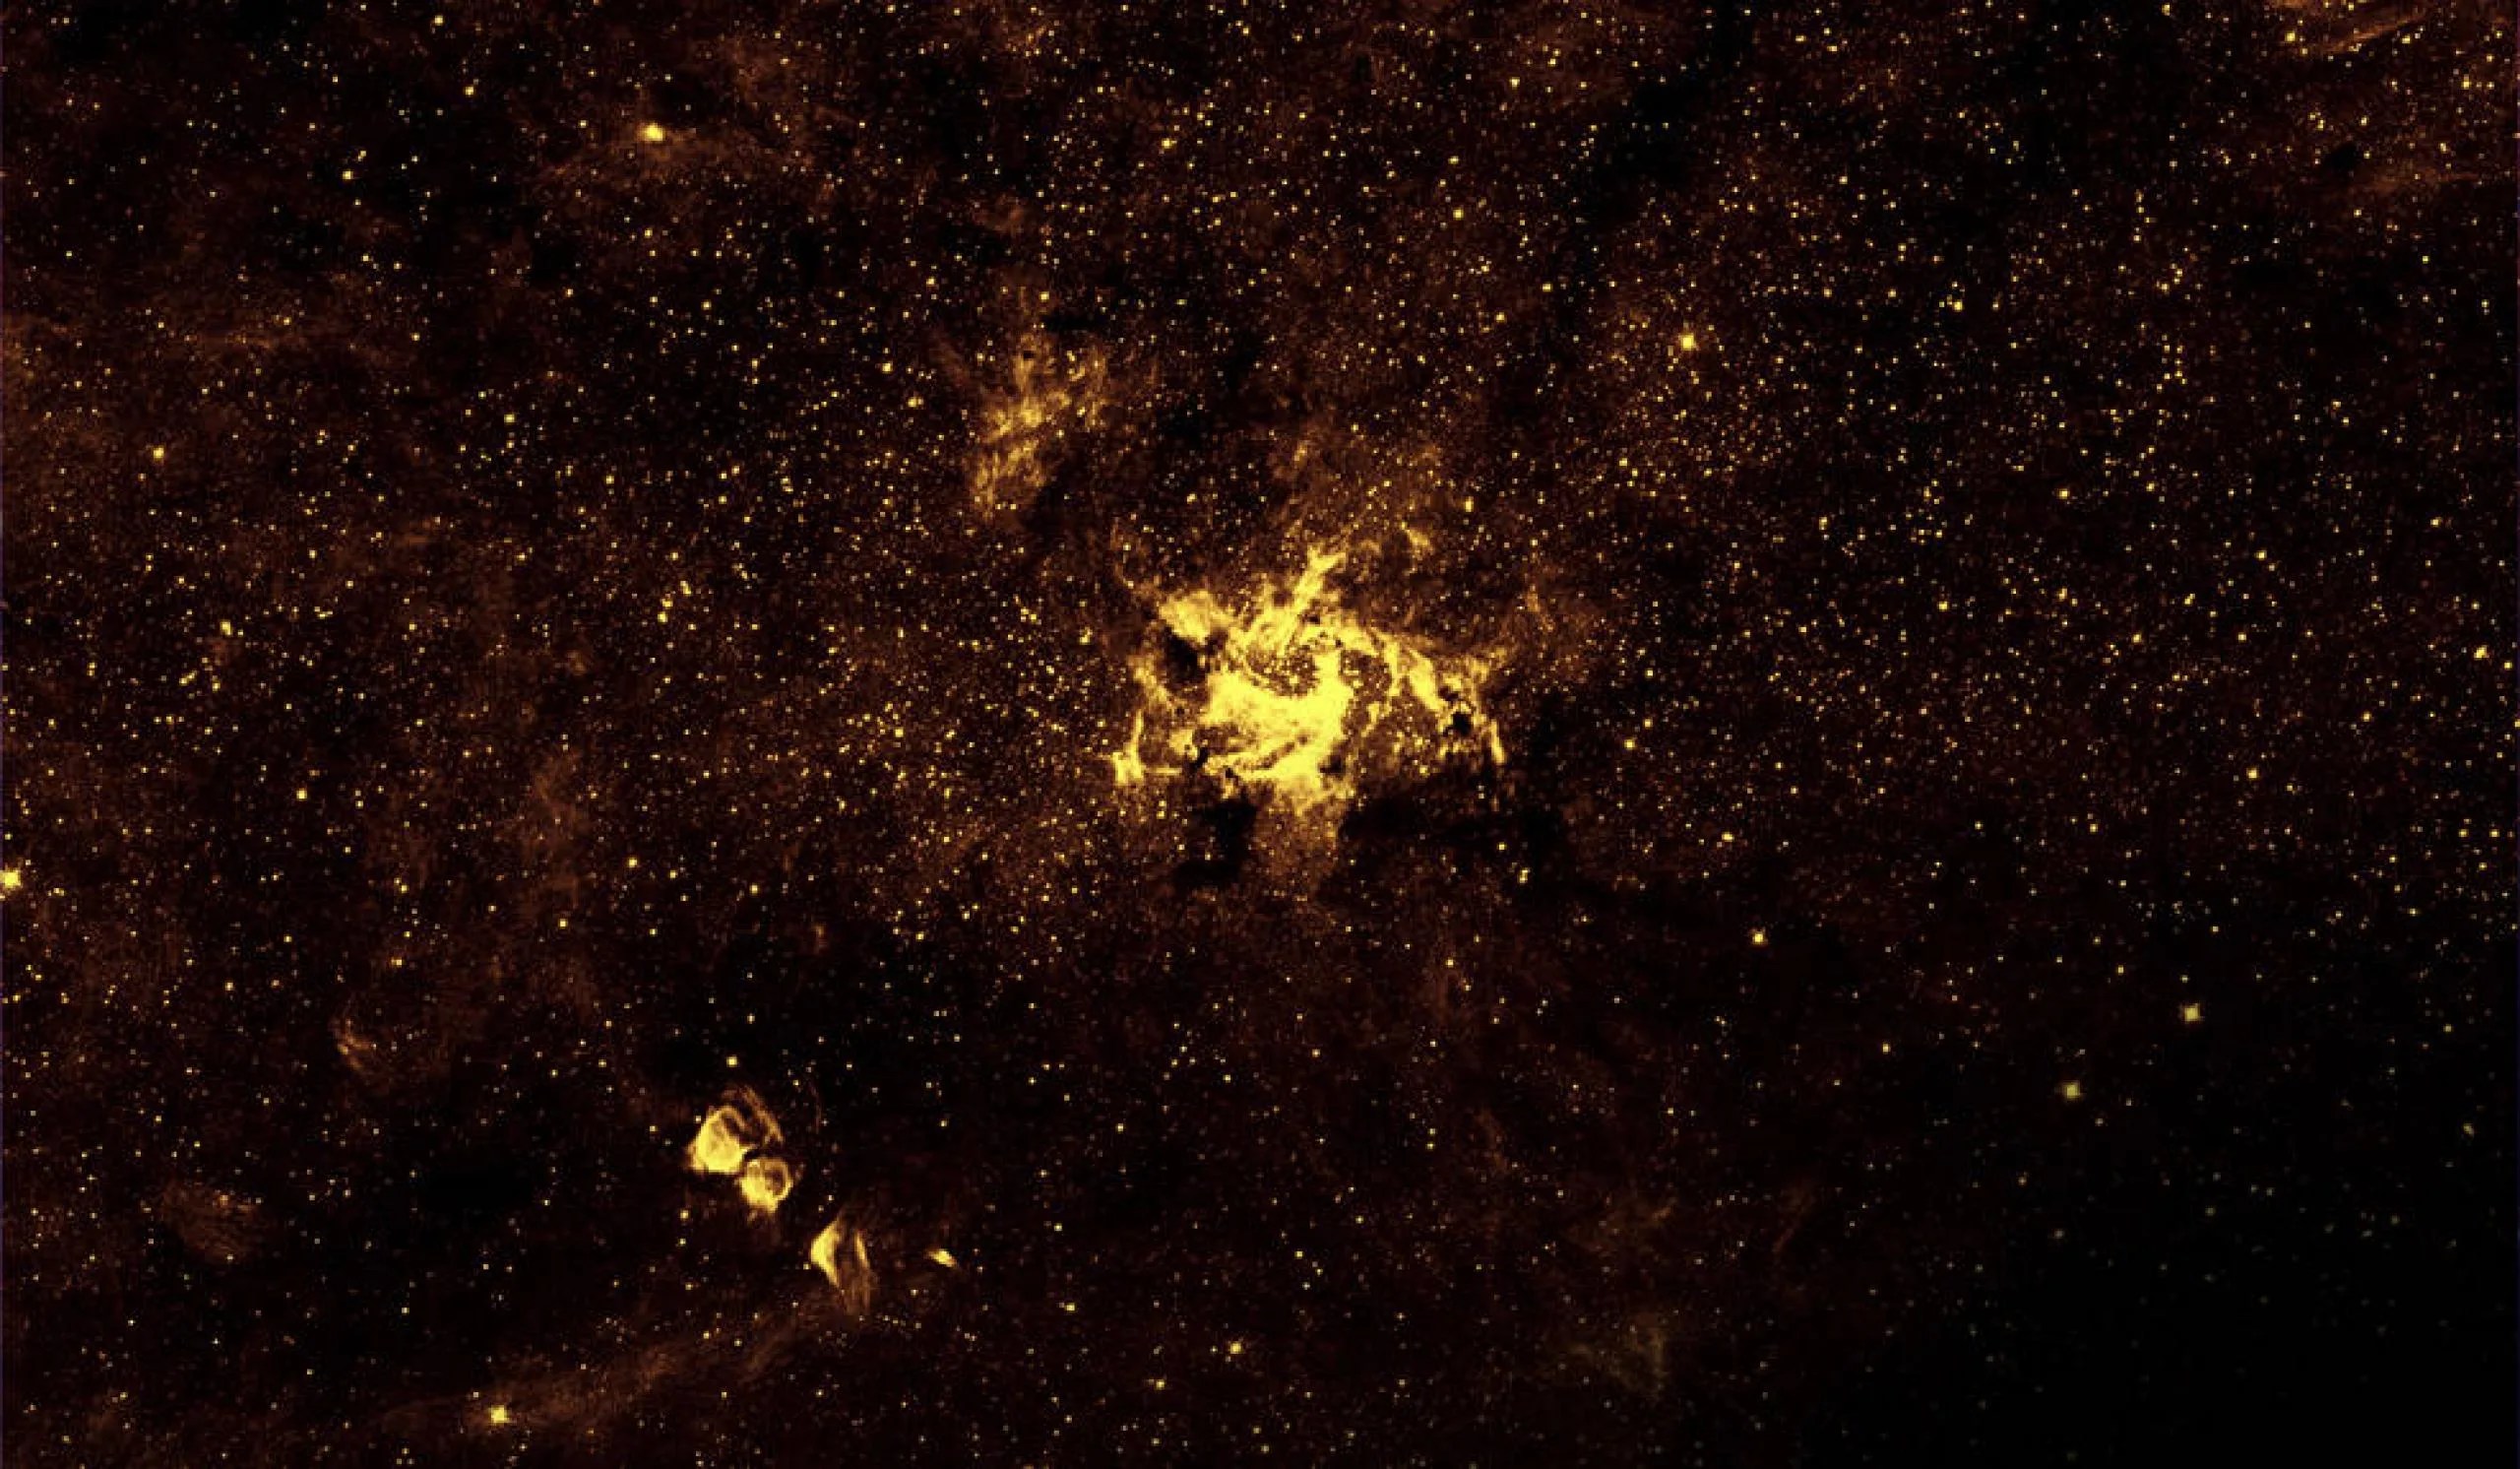 El gas calentado, gira alrededor de la región del agujero negro supermasivo de la galaxia de la Vía Láctea, iluminado con luz infrarroja cercana, capturada por el Telescopio Espacial Hubble de la NASA.